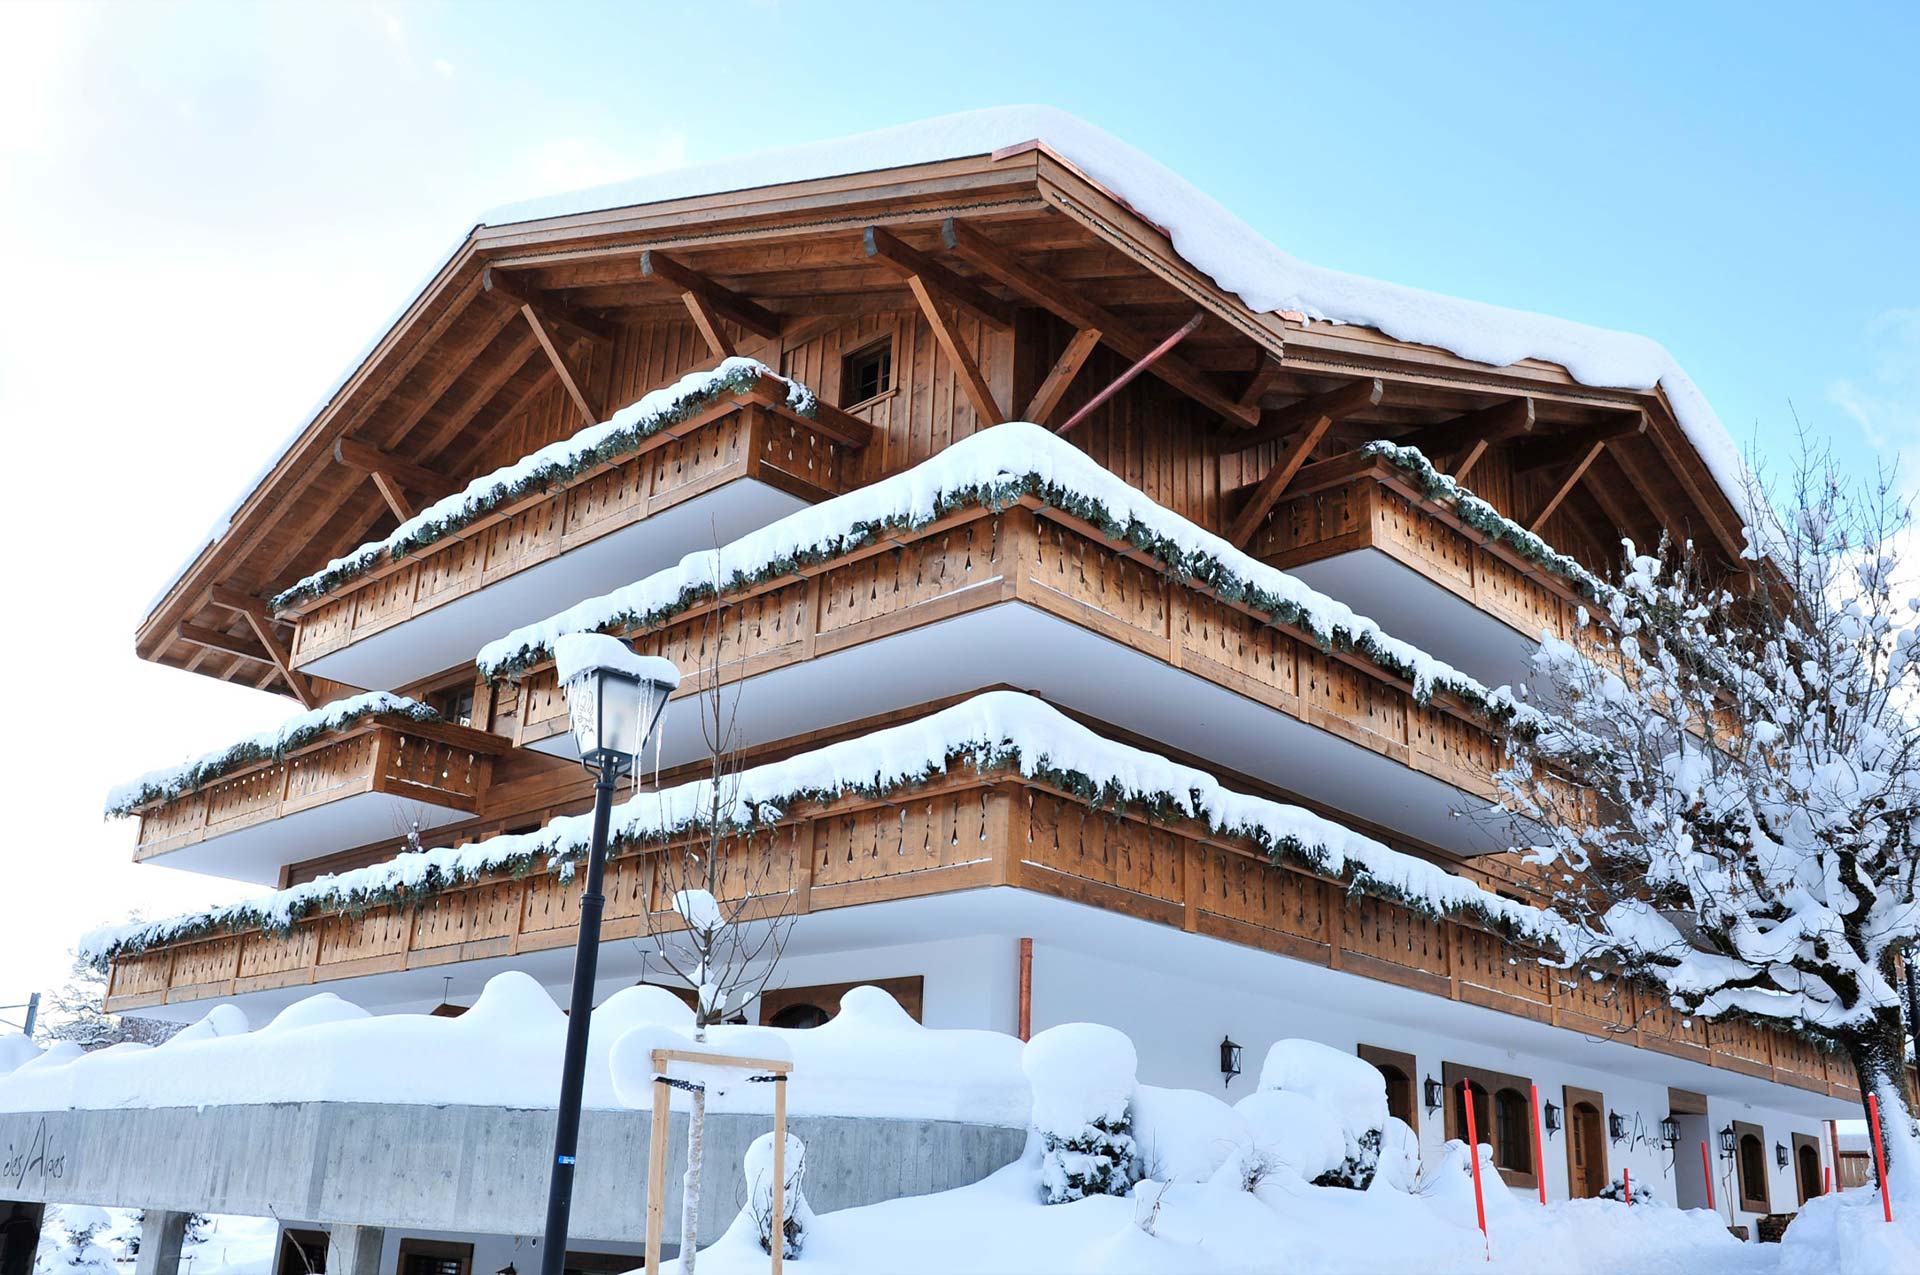 Hotel des Alpes
- Schönried / Gstaad -